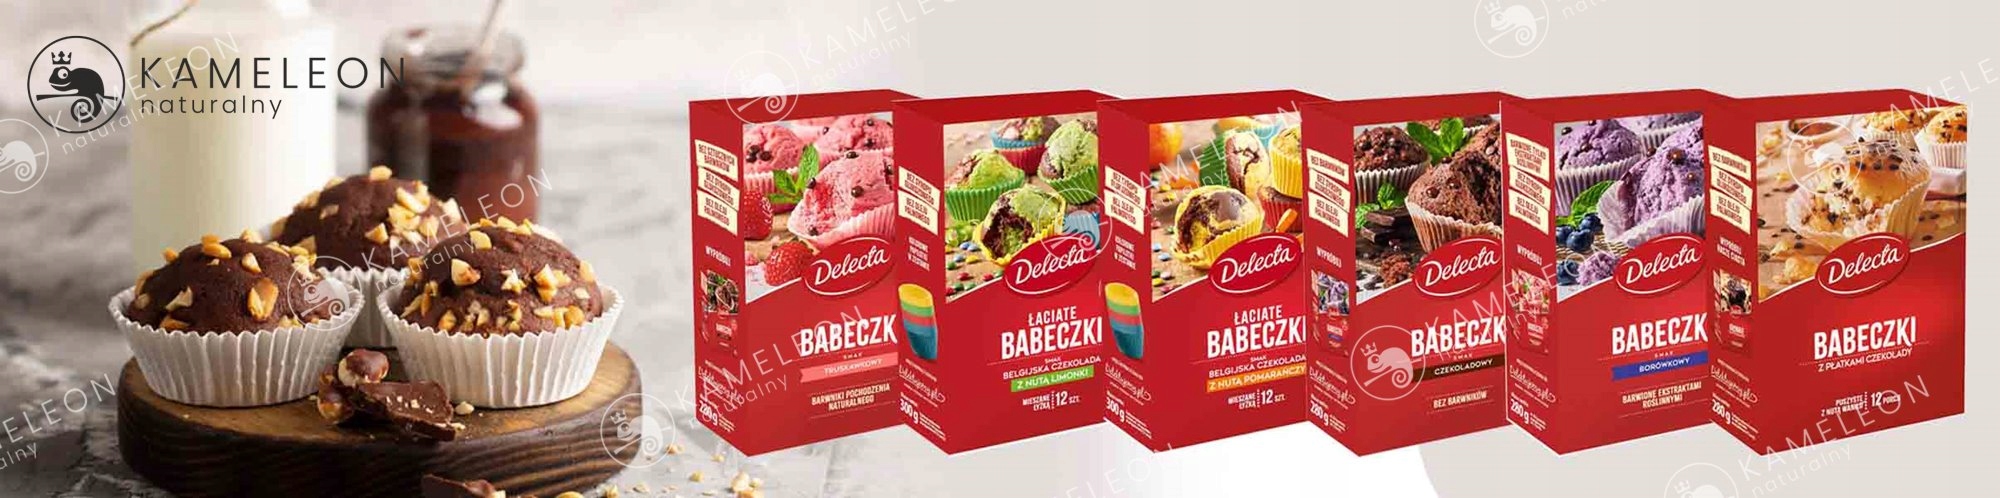 Delecta BABECZKI MIX 6 RODZAJÓW 1,72KG 72 babeczki Produkt nie zawiera orzechów